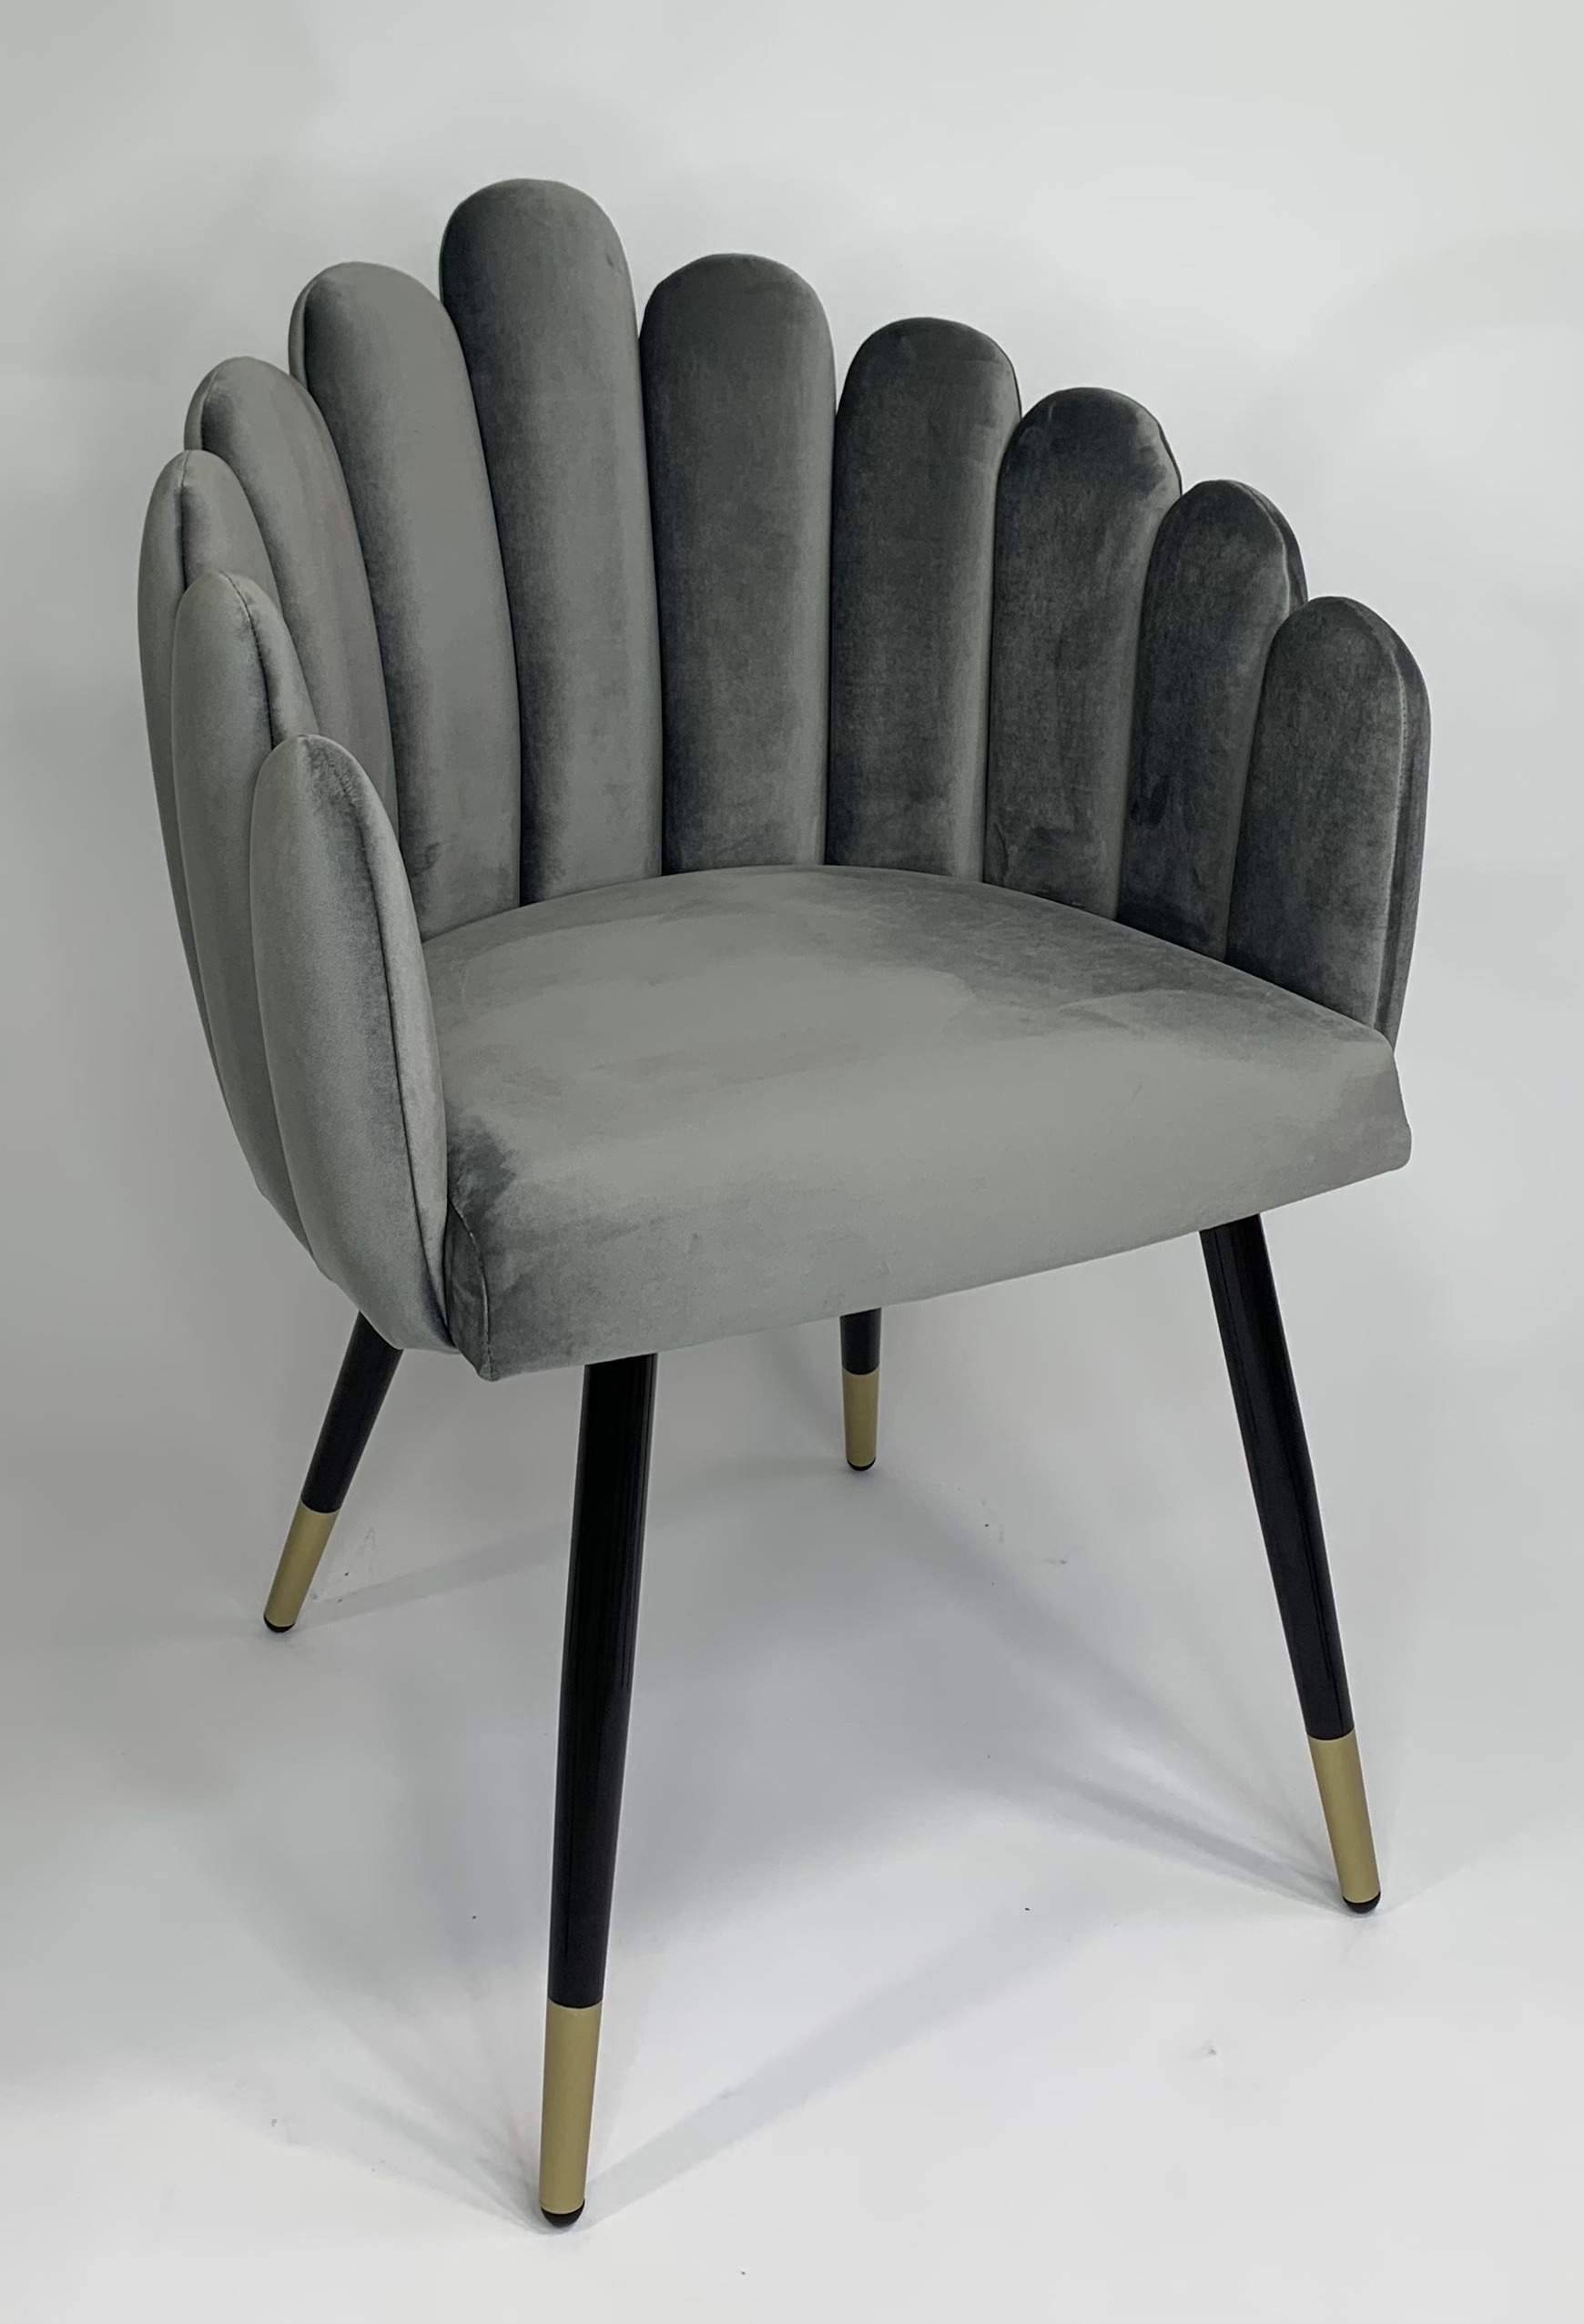 90203169 Стул-кресло для кухни/гостинной/спальни цвет серый Ракушка STLM-0131116 MILAVIO